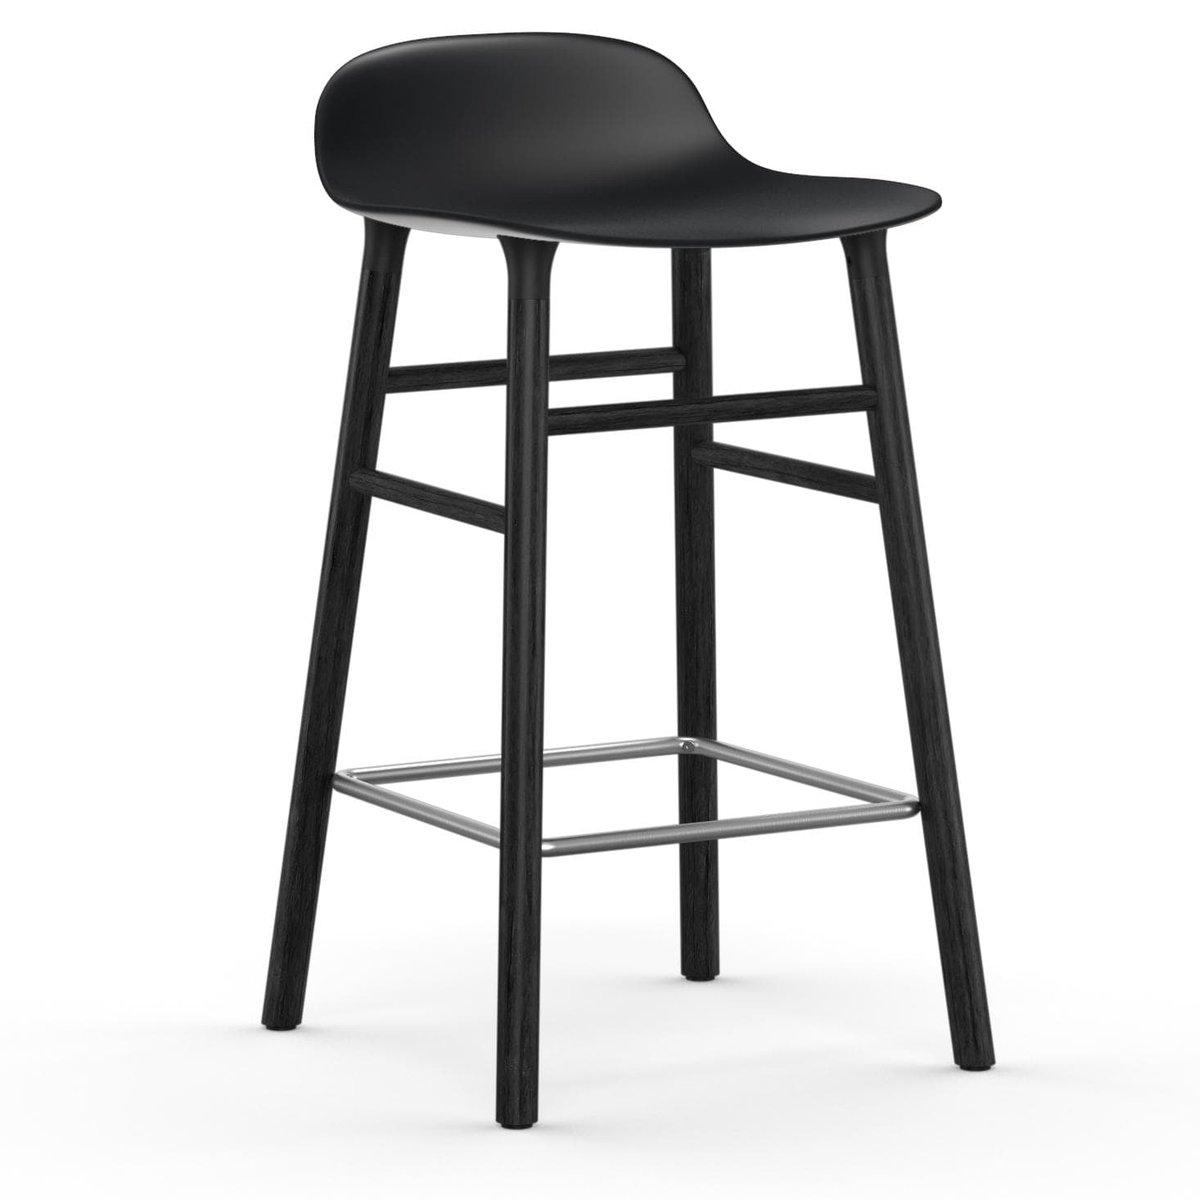 Normann Copenhagen Form Chair barkruk gelakte eiken poten 65 cm zwart